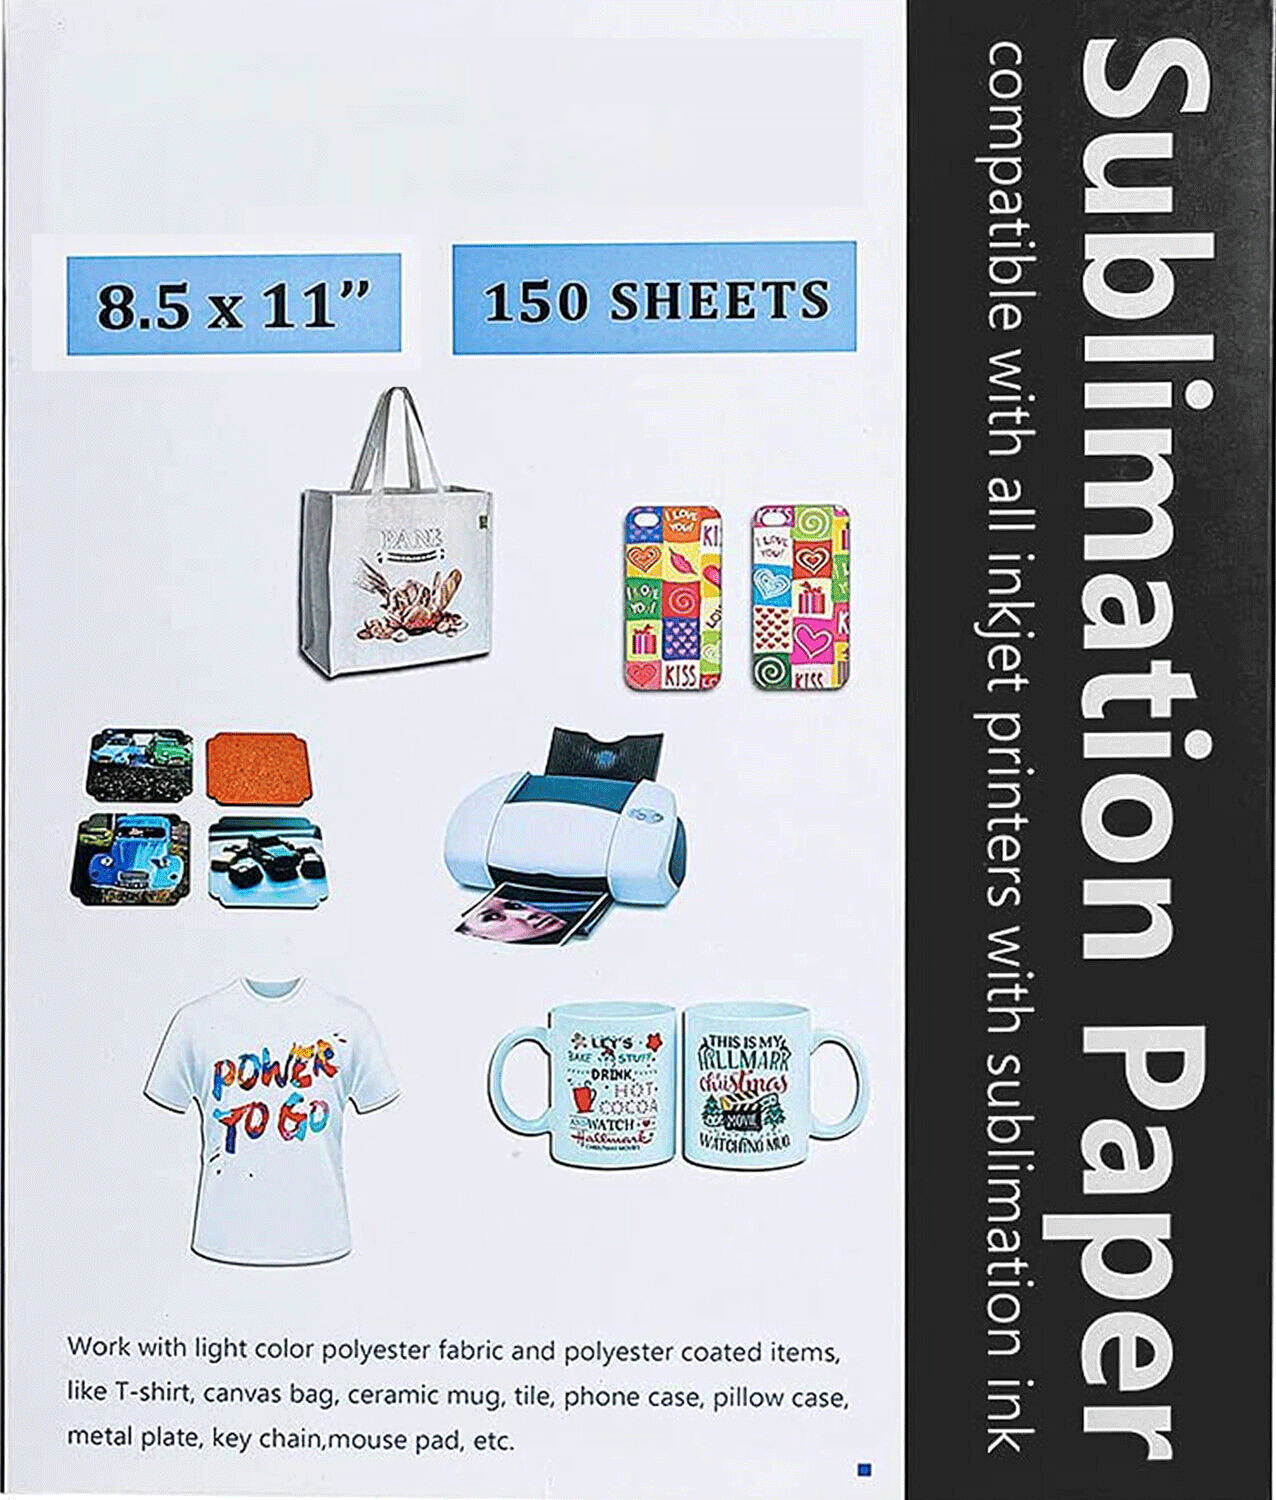  MECOLOUR Sublimation Paper - 150 Sheets 120gsm 8.5“x